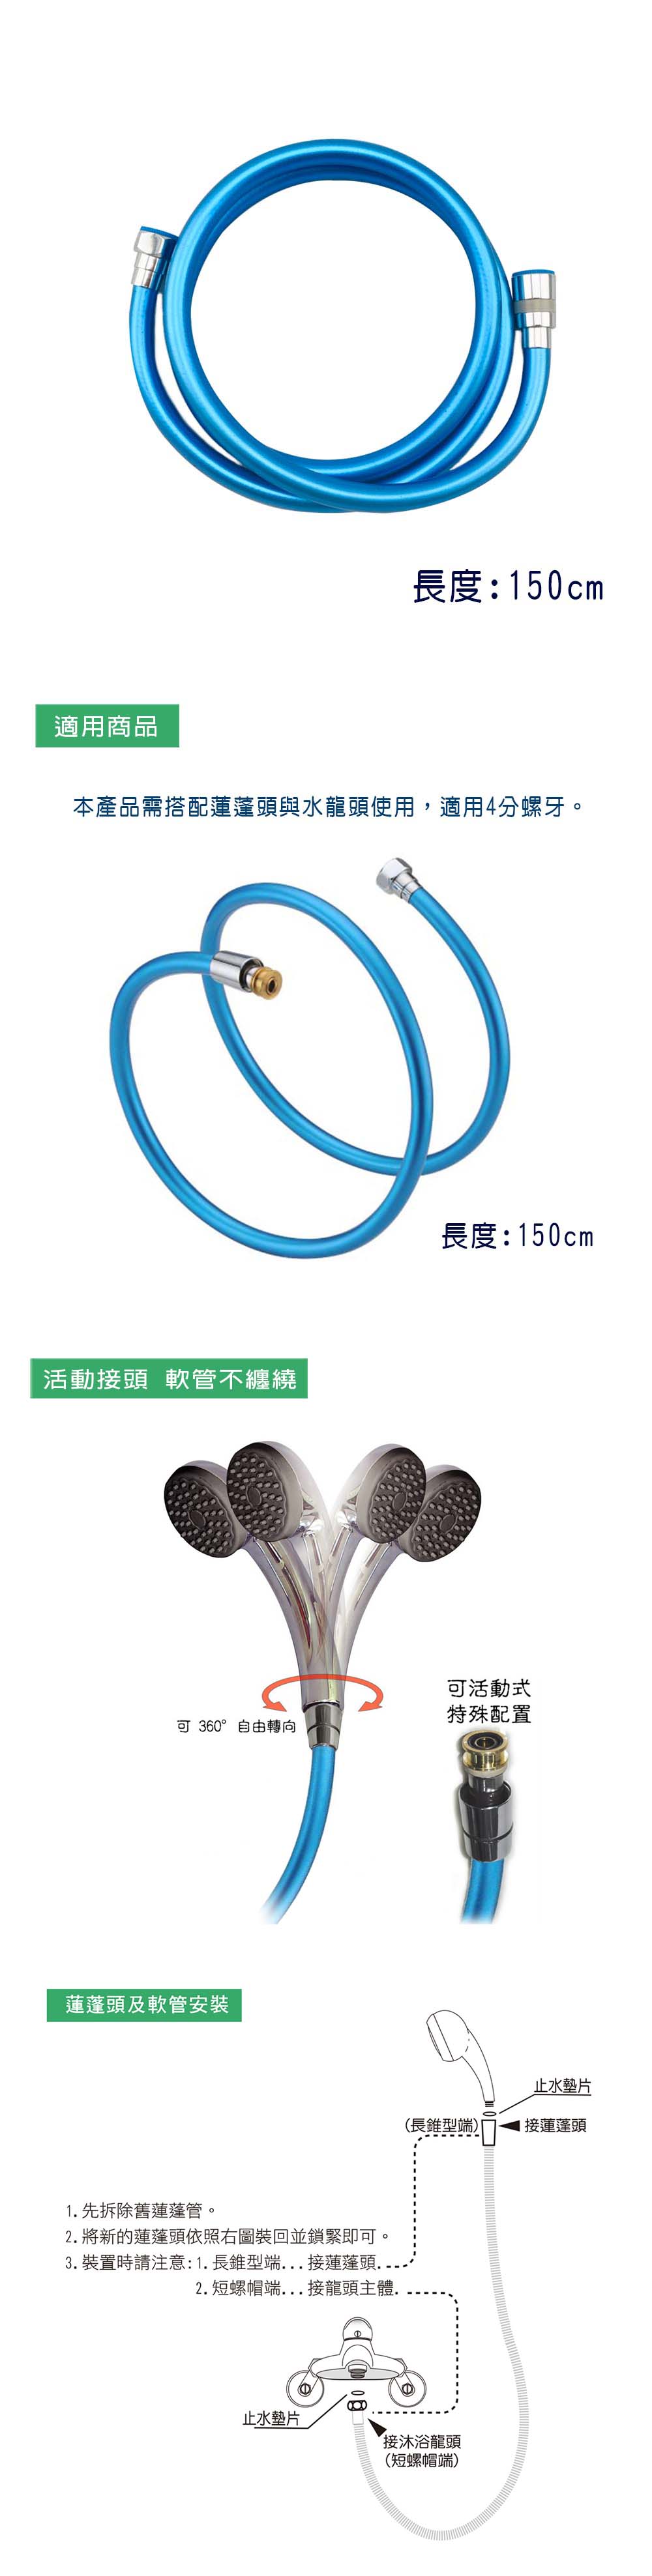 亮彩PVC沐浴軟管-藍(150CM)